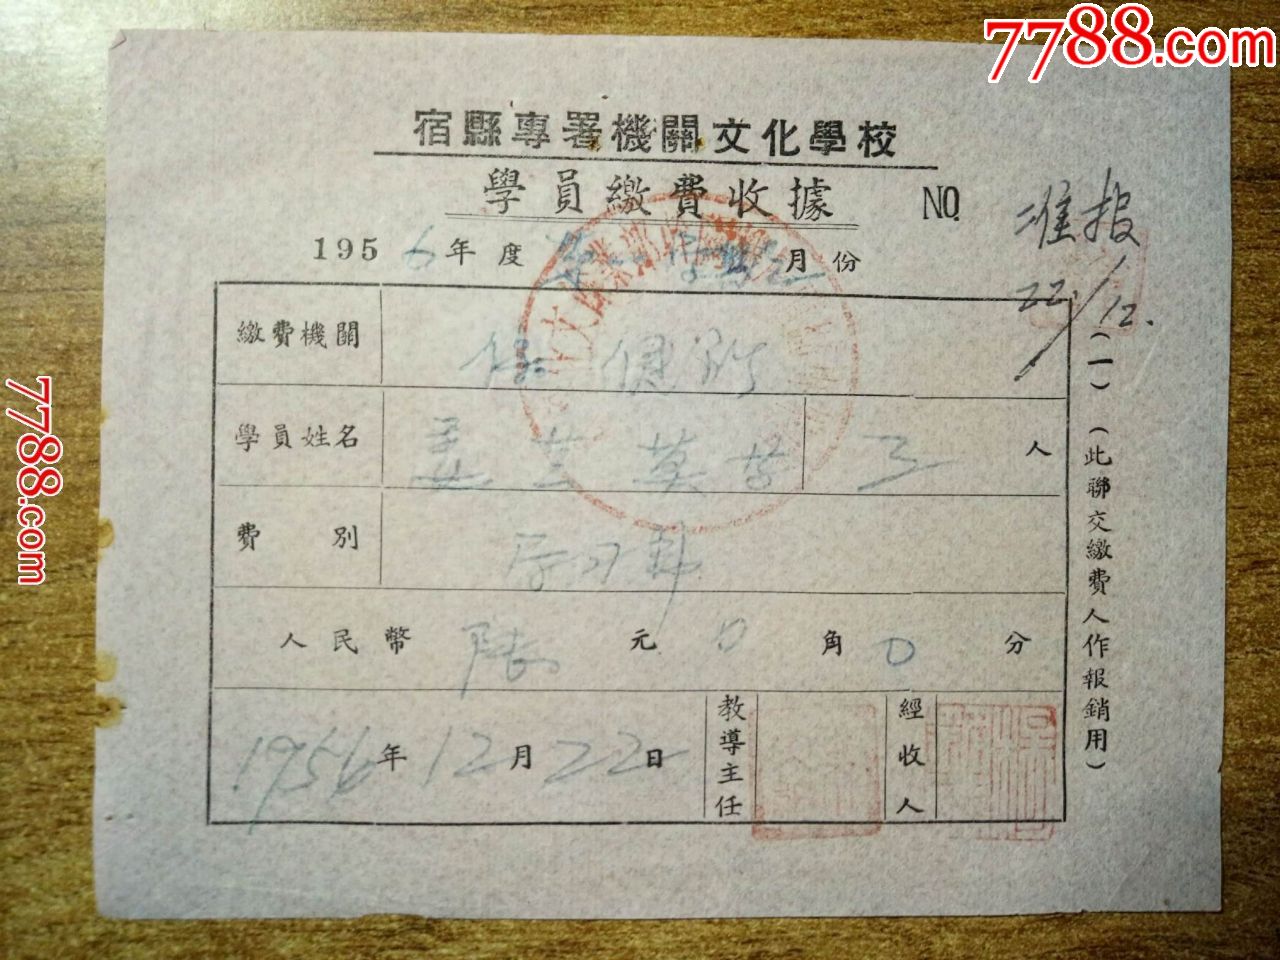 1956年宿县专属机关文化学校学员缴费收据